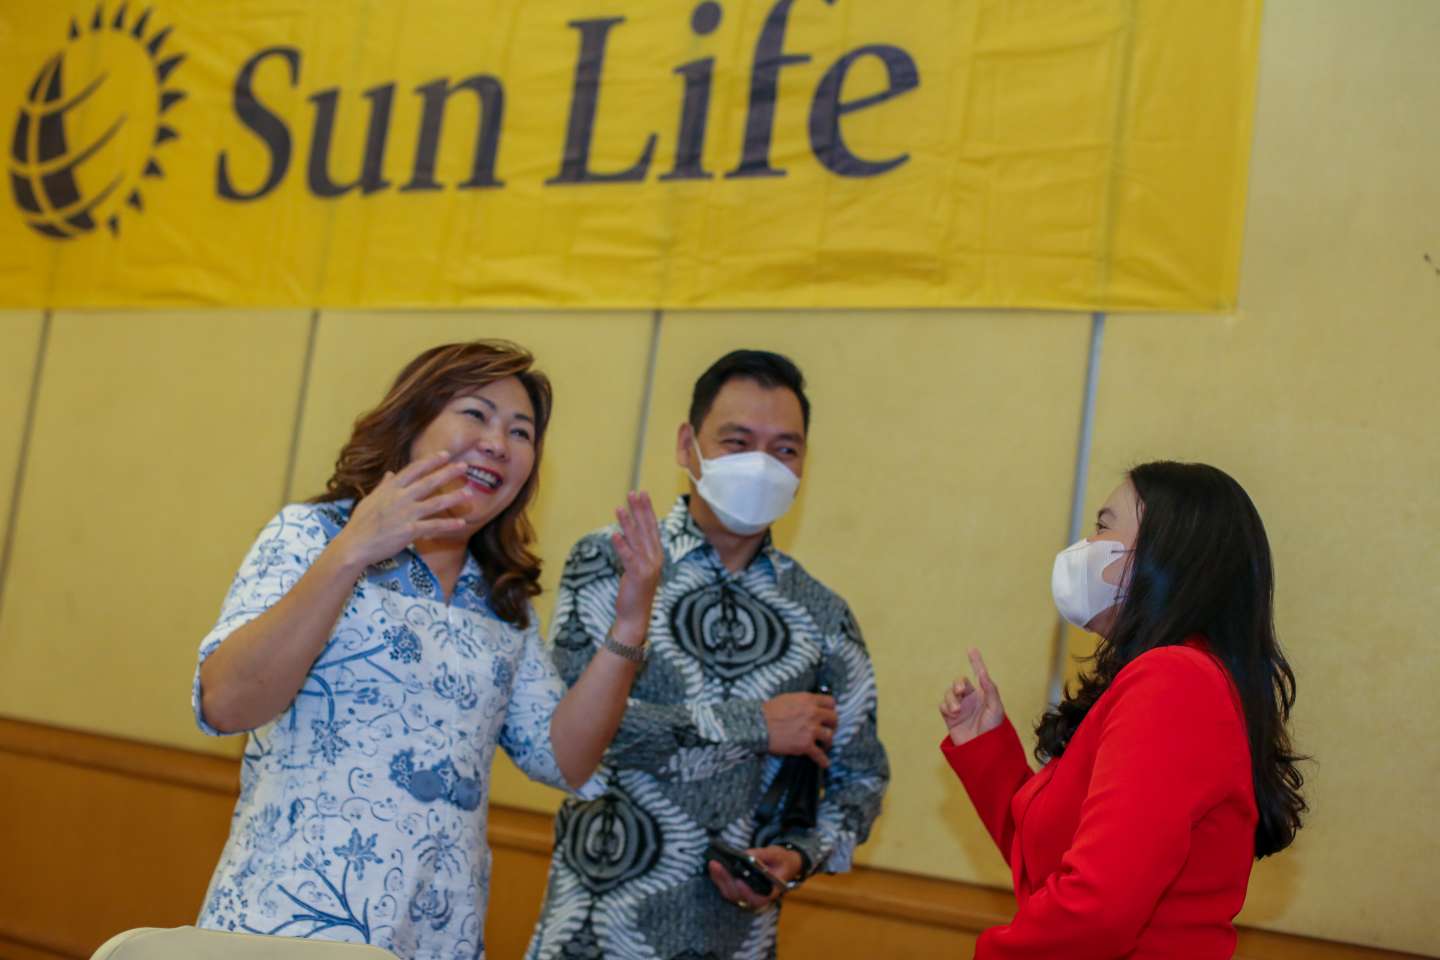 Sederet Keuntungan Menjadi Tenaga Pemasar Asuransi Sun Life Indonesia